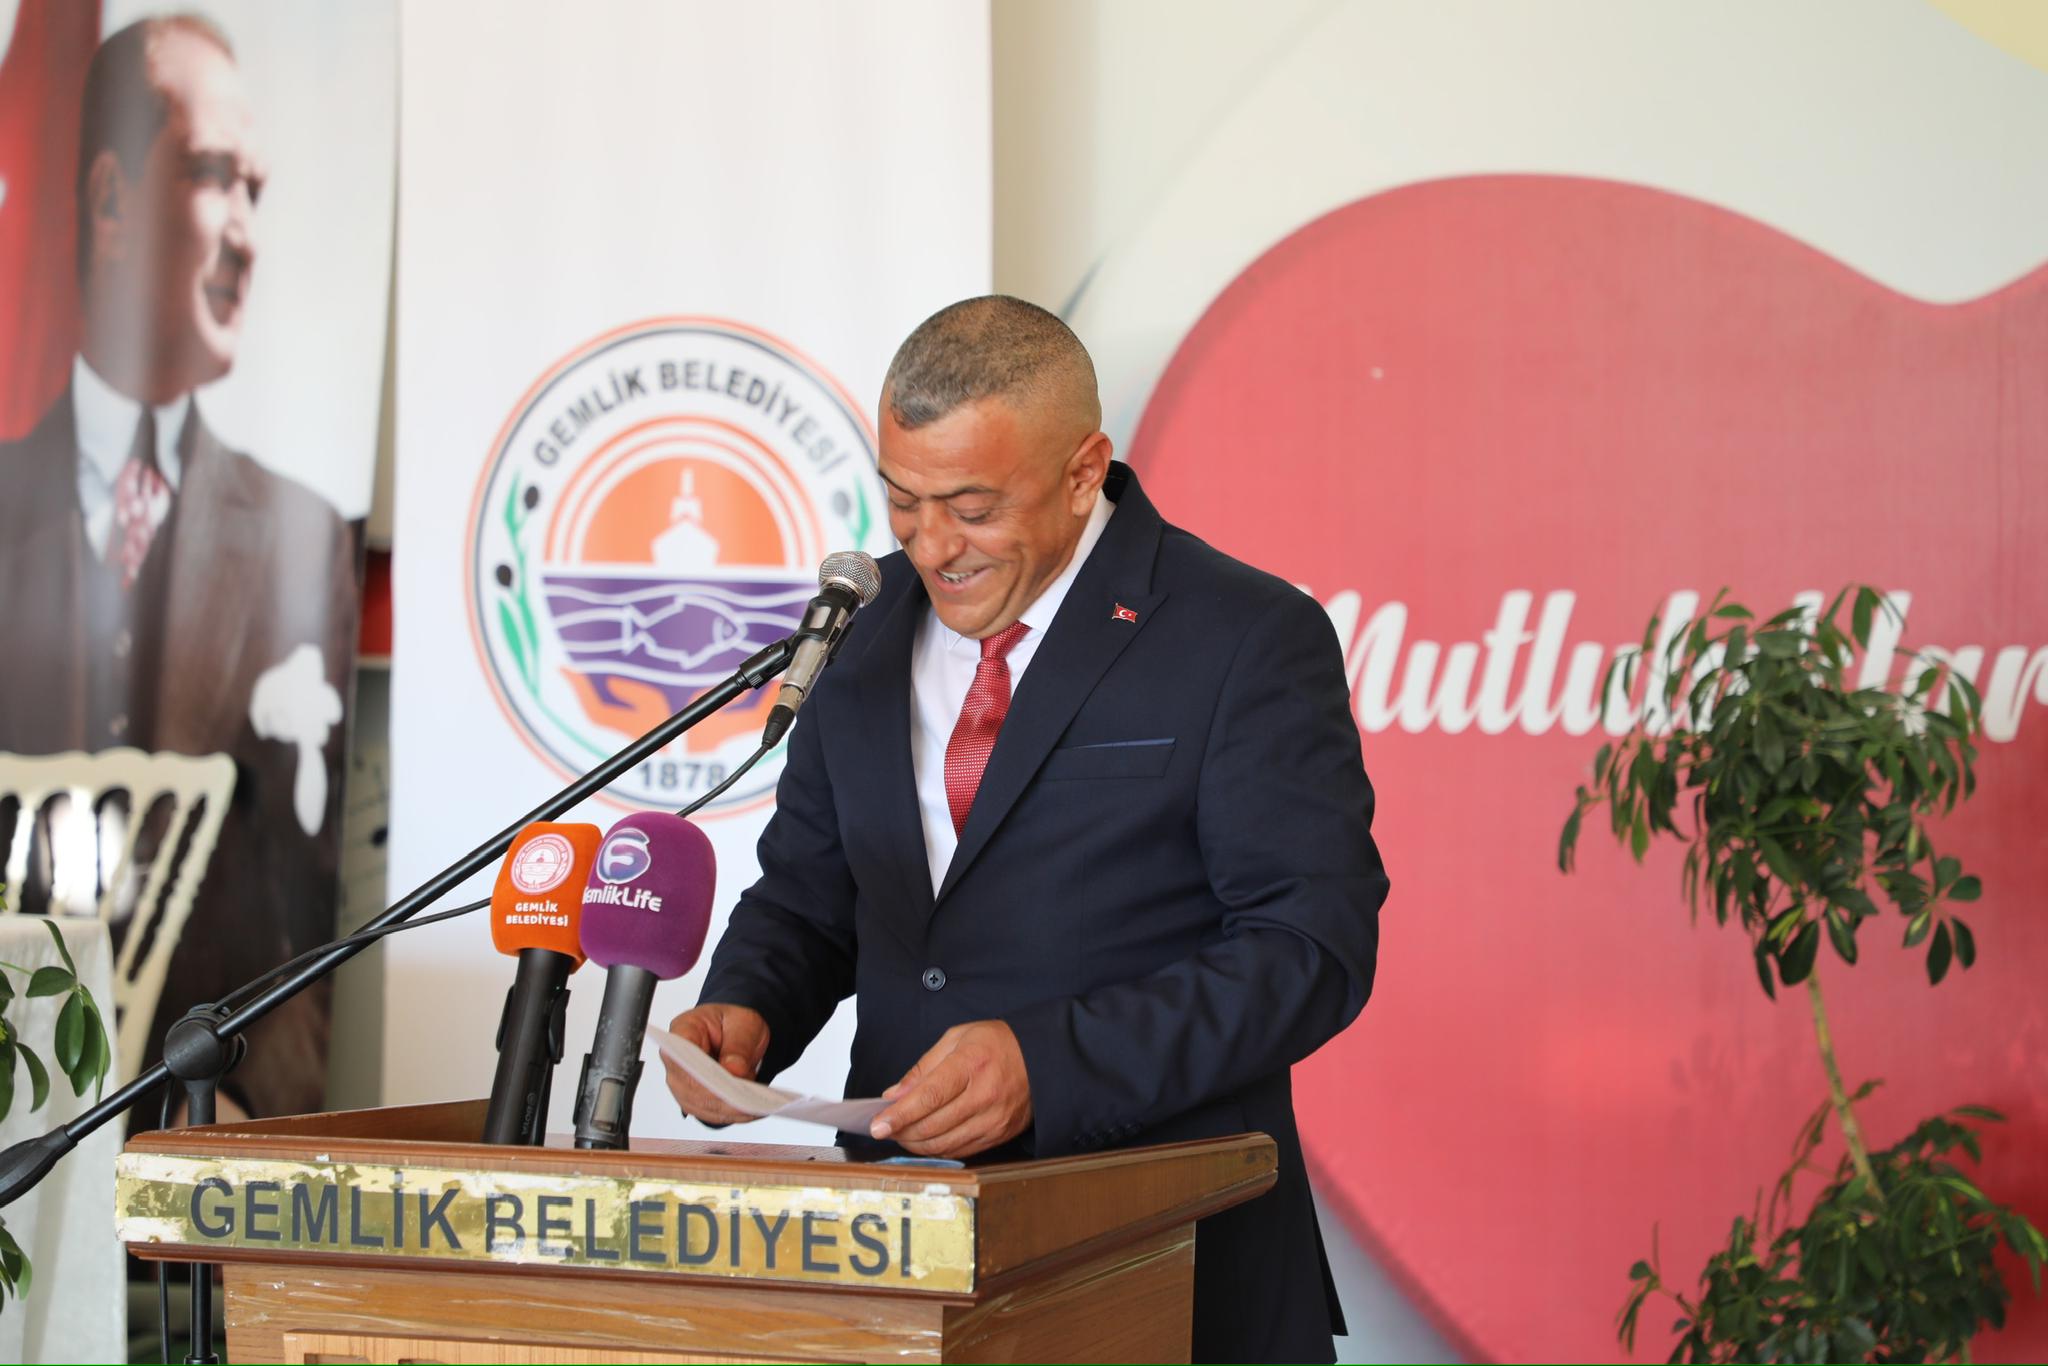 Gemlik Belediyespor’da Yeni Başkan Mustafa Duran Oldu (1)